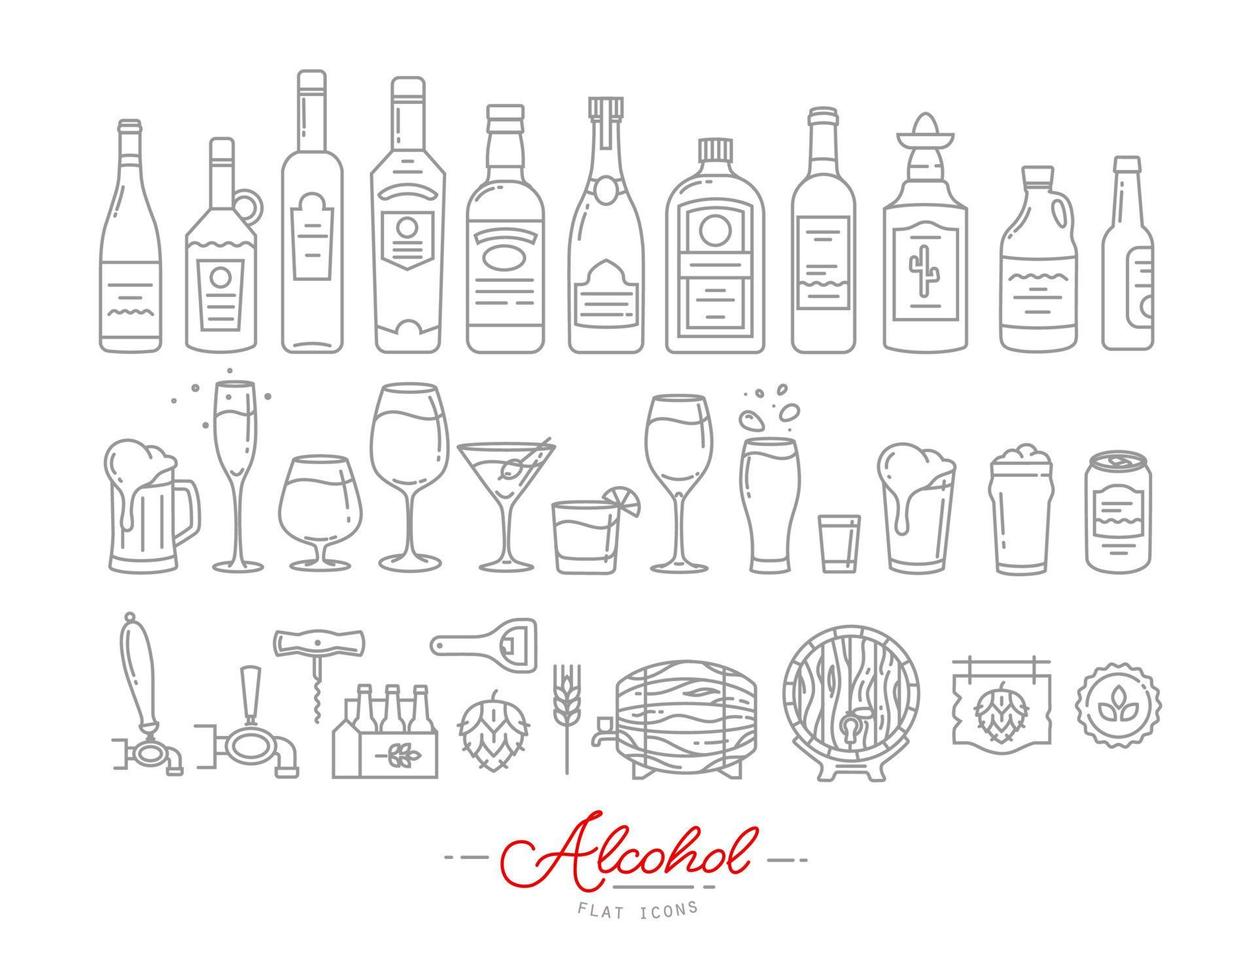 conjunto de ícones de álcool em desenho de estilo plano com linhas cinzas no fundo branco vetor